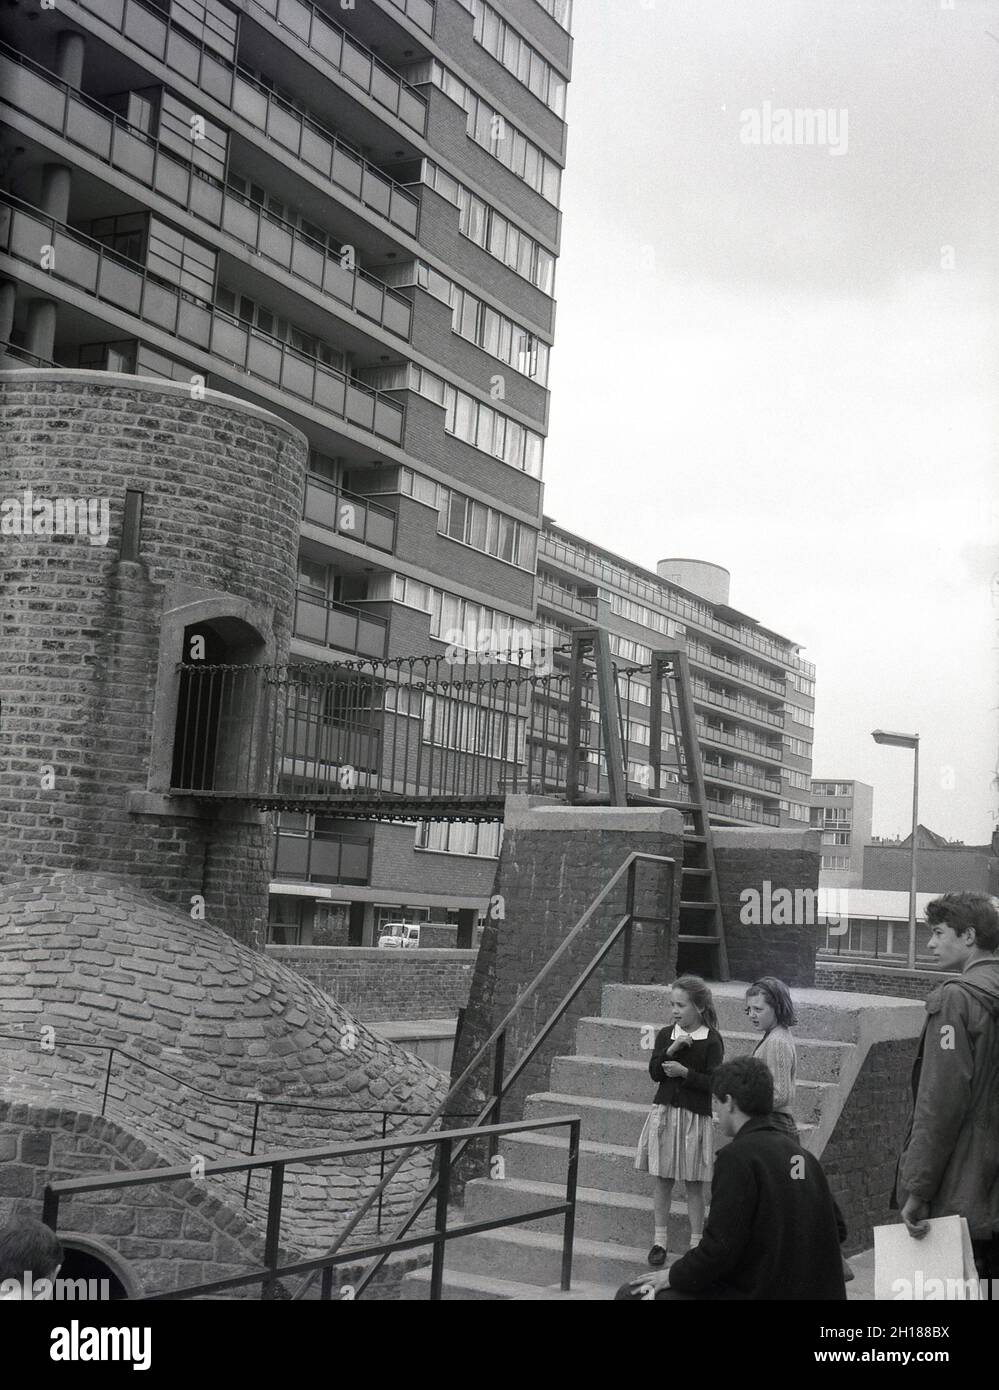 Années 1960, historique, enfants à l'extérieur à côté d'une aire de jeux en béton et en briques, dans un grand domaine de logement de conseil, Churchill Gardens à Pimlico, dans le centre de Londres, Angleterre, Royaume-Uni.Construit entre 1948 et 1962 pour remplacer les terrasses victoriennes endommagées dans le Blitz de la Seconde Guerre mondiale, c'était un immense domaine de logements sociaux modernes, avec 32 blocs de tour fournissant 1,600 maisons. Banque D'Images